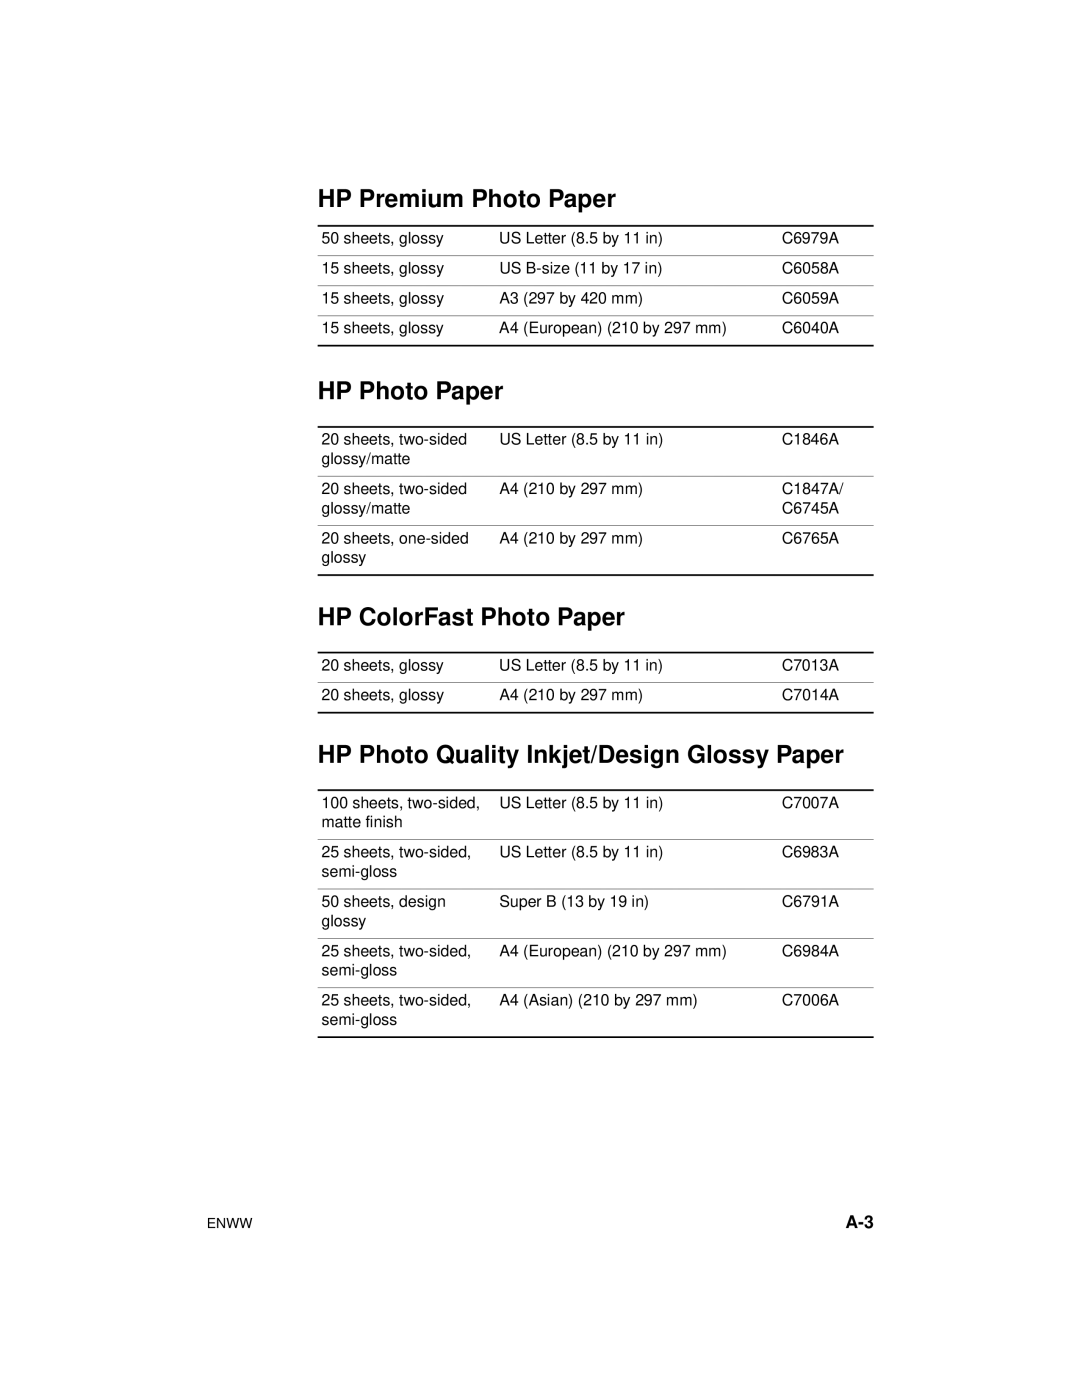 HP Color Inkjet cp1700 manual HP Premium Photo Paper, HP Photo Paper, HP ColorFast Photo Paper 